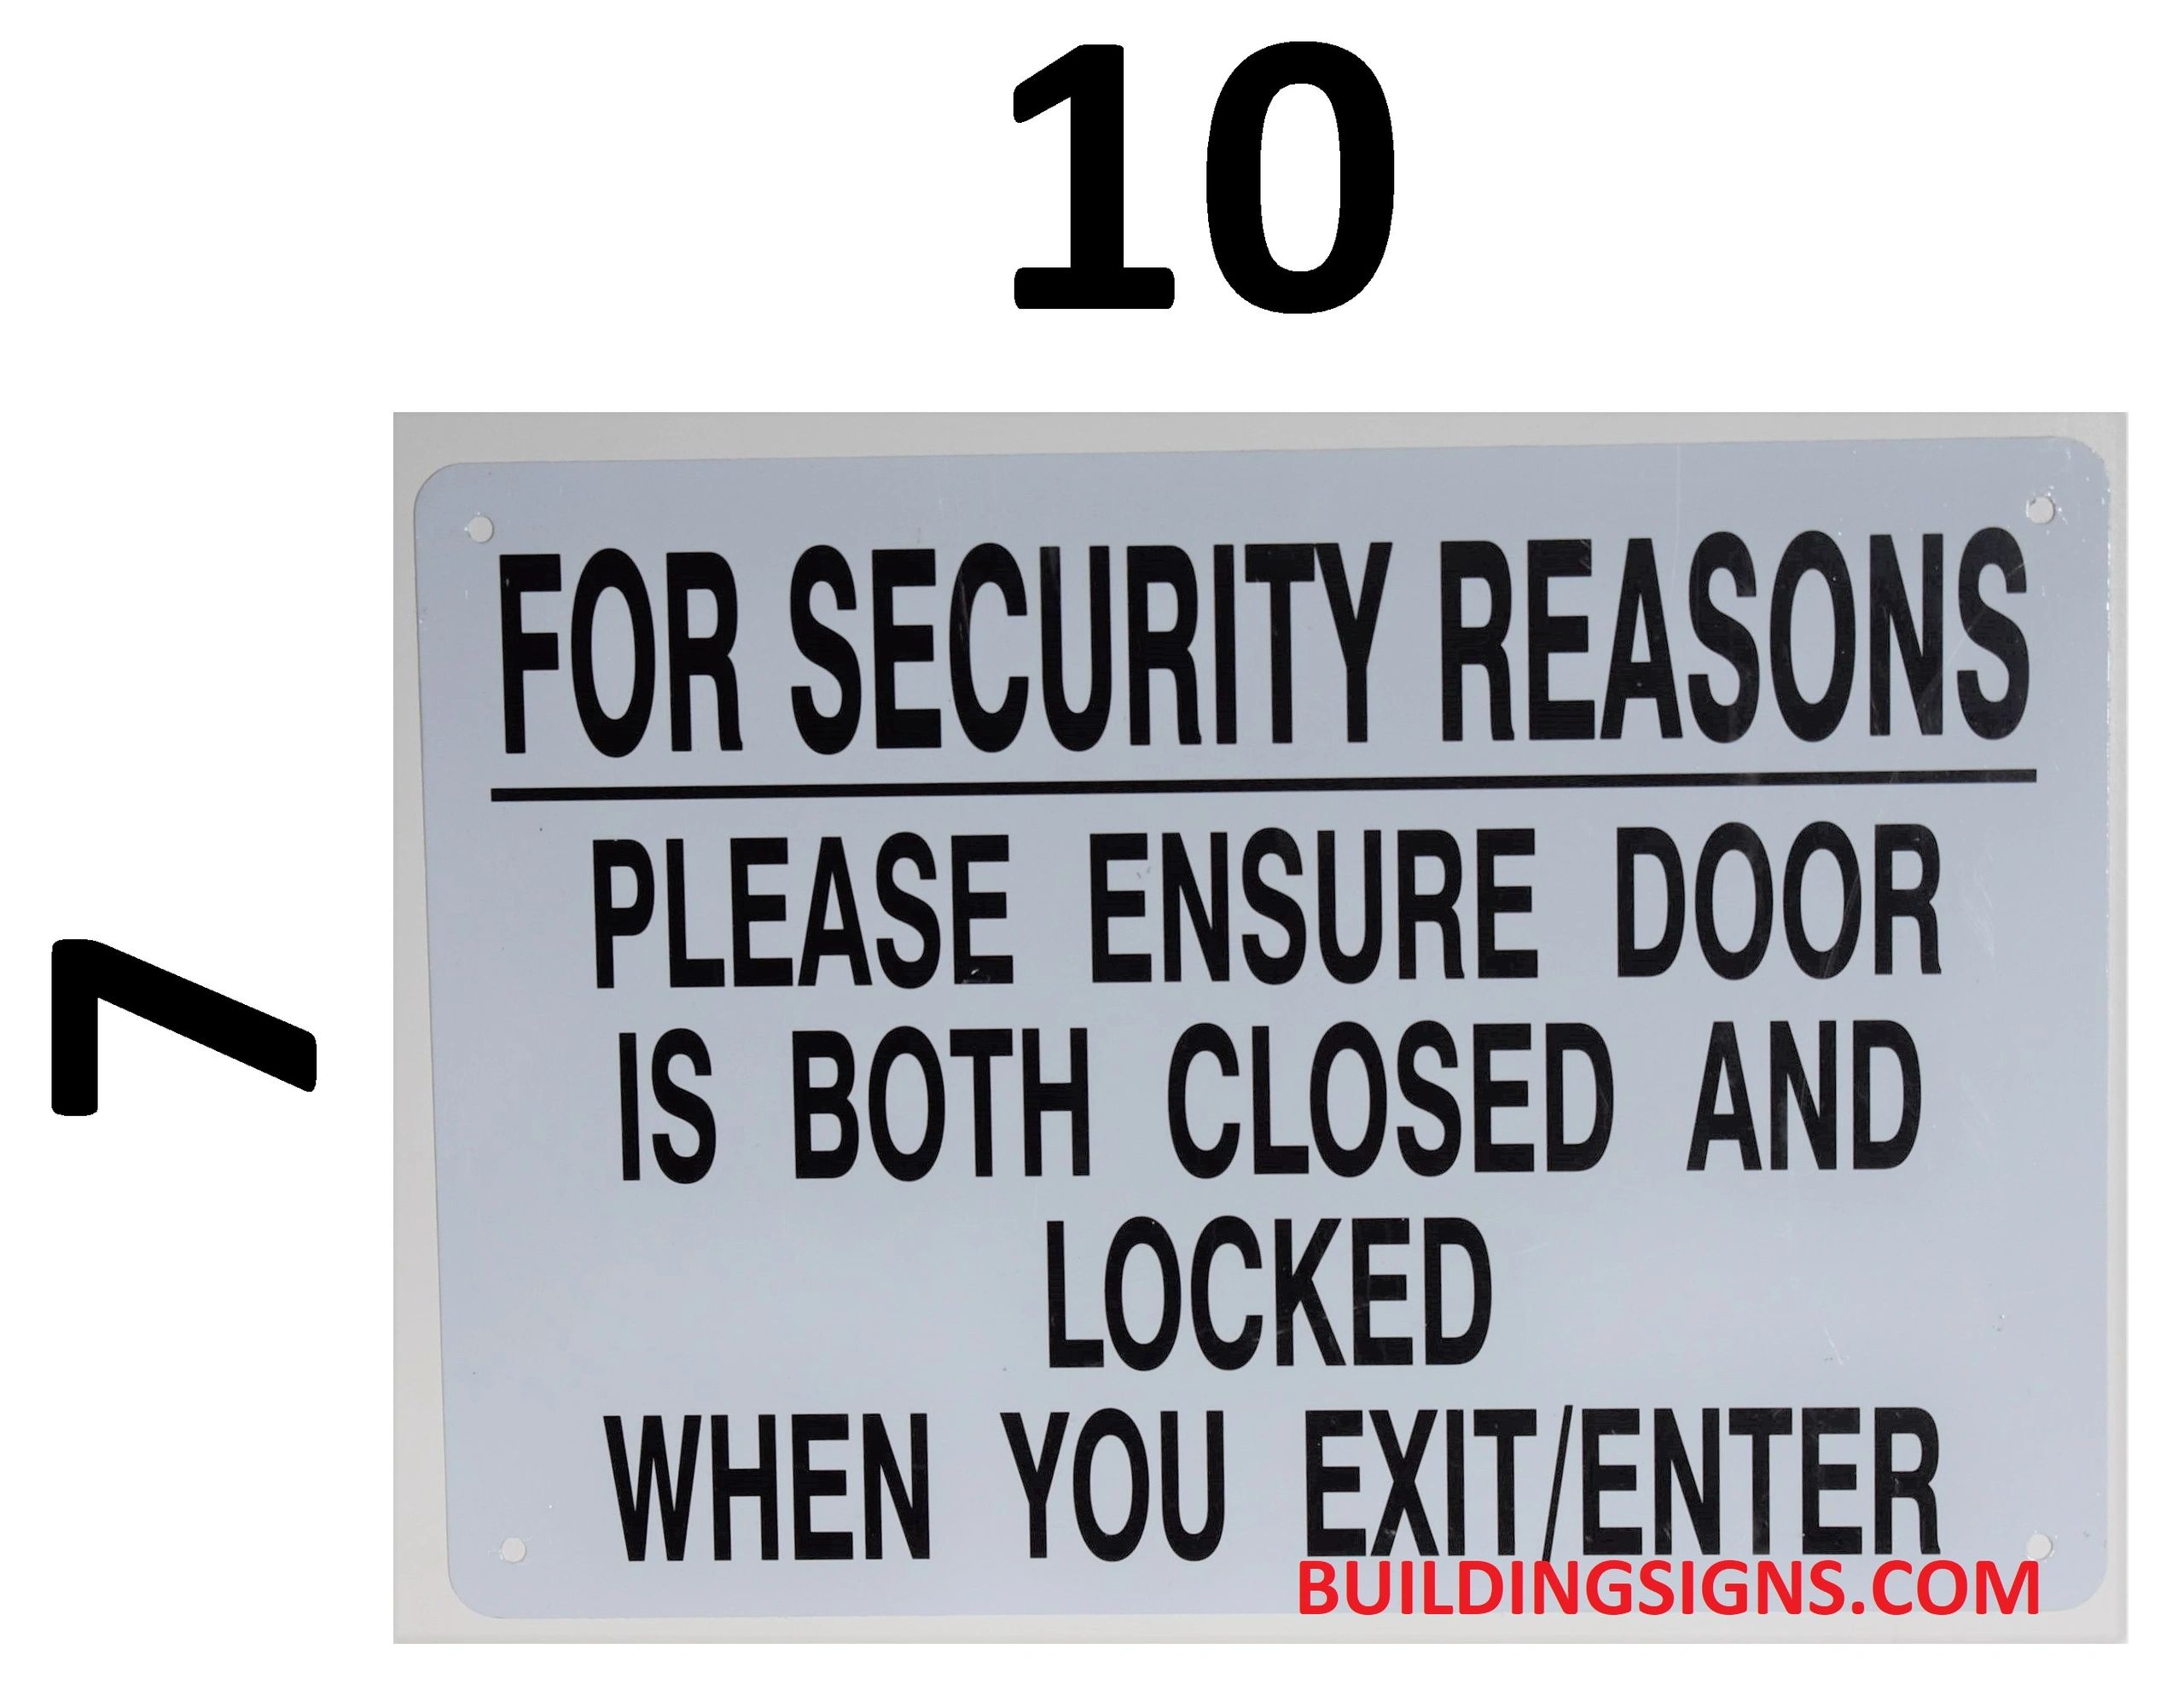 STOP Please Lock The Gate Sign - Security Door Sign, SKU: K-8326